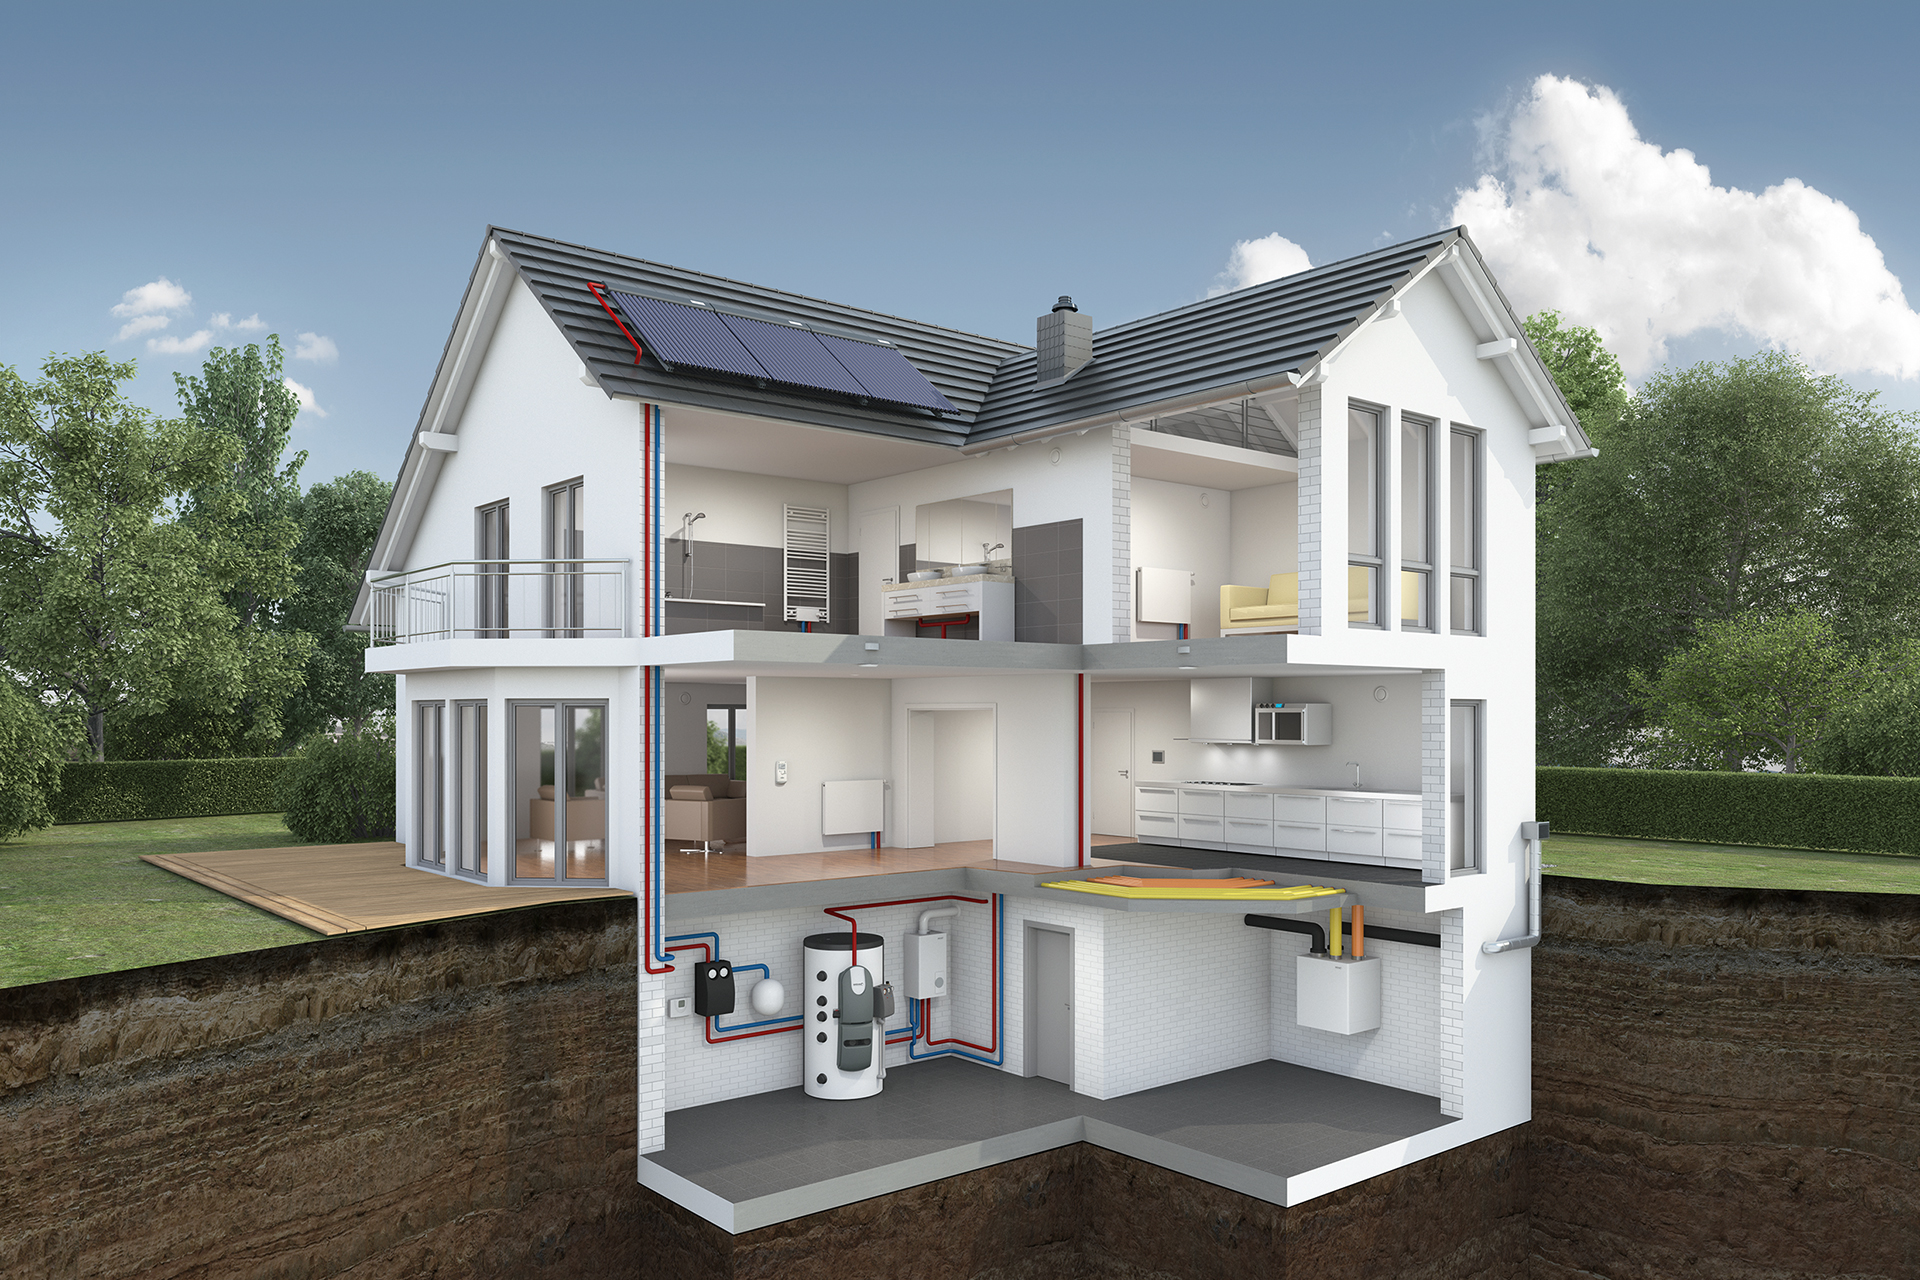 Solaranlagen - Funktionsweise und Nutzung